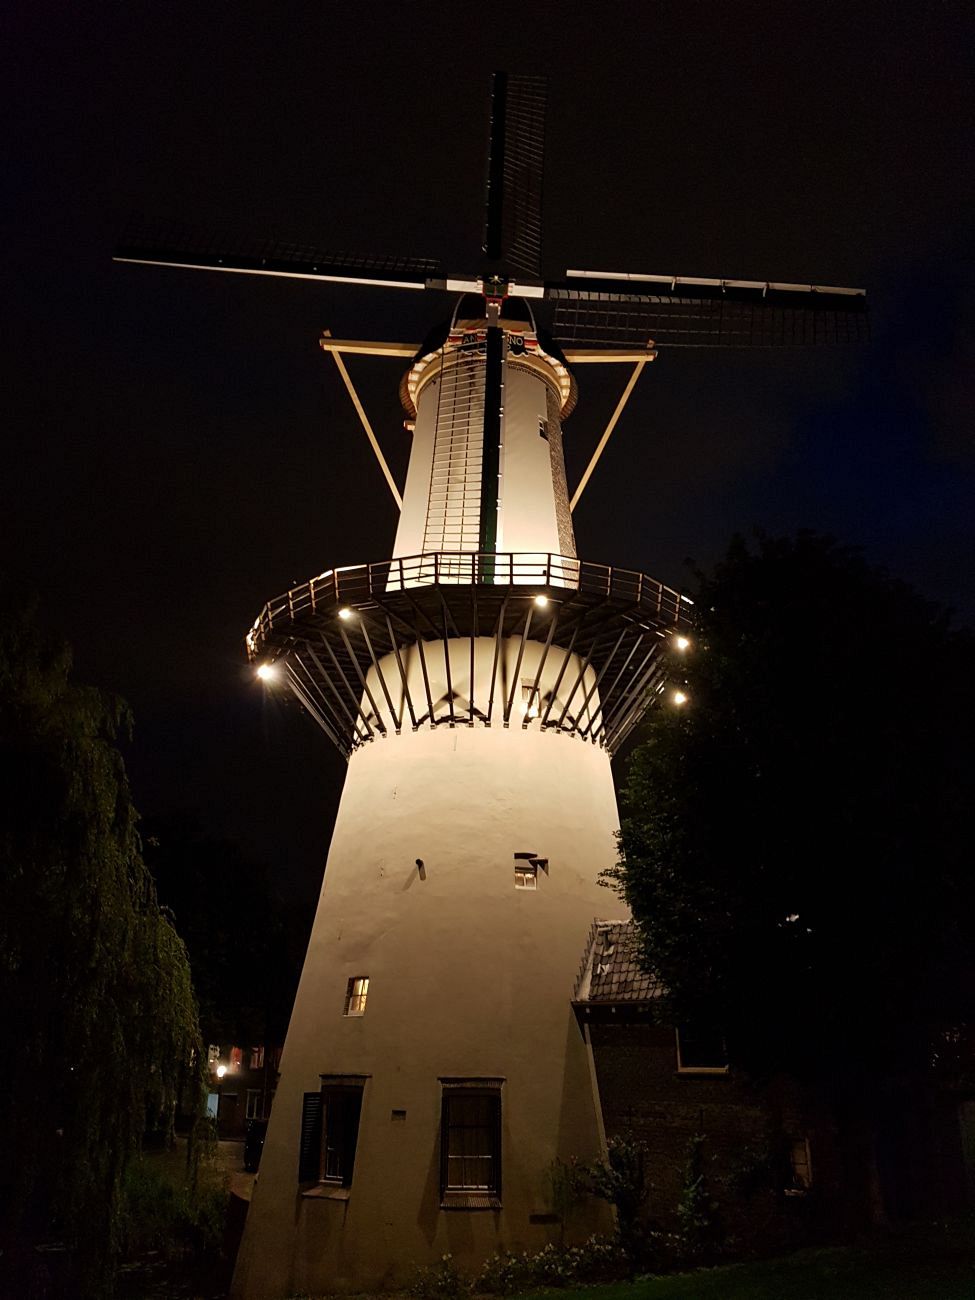 PvdM Techniek zet molens van Schiedam in energiezuinig licht